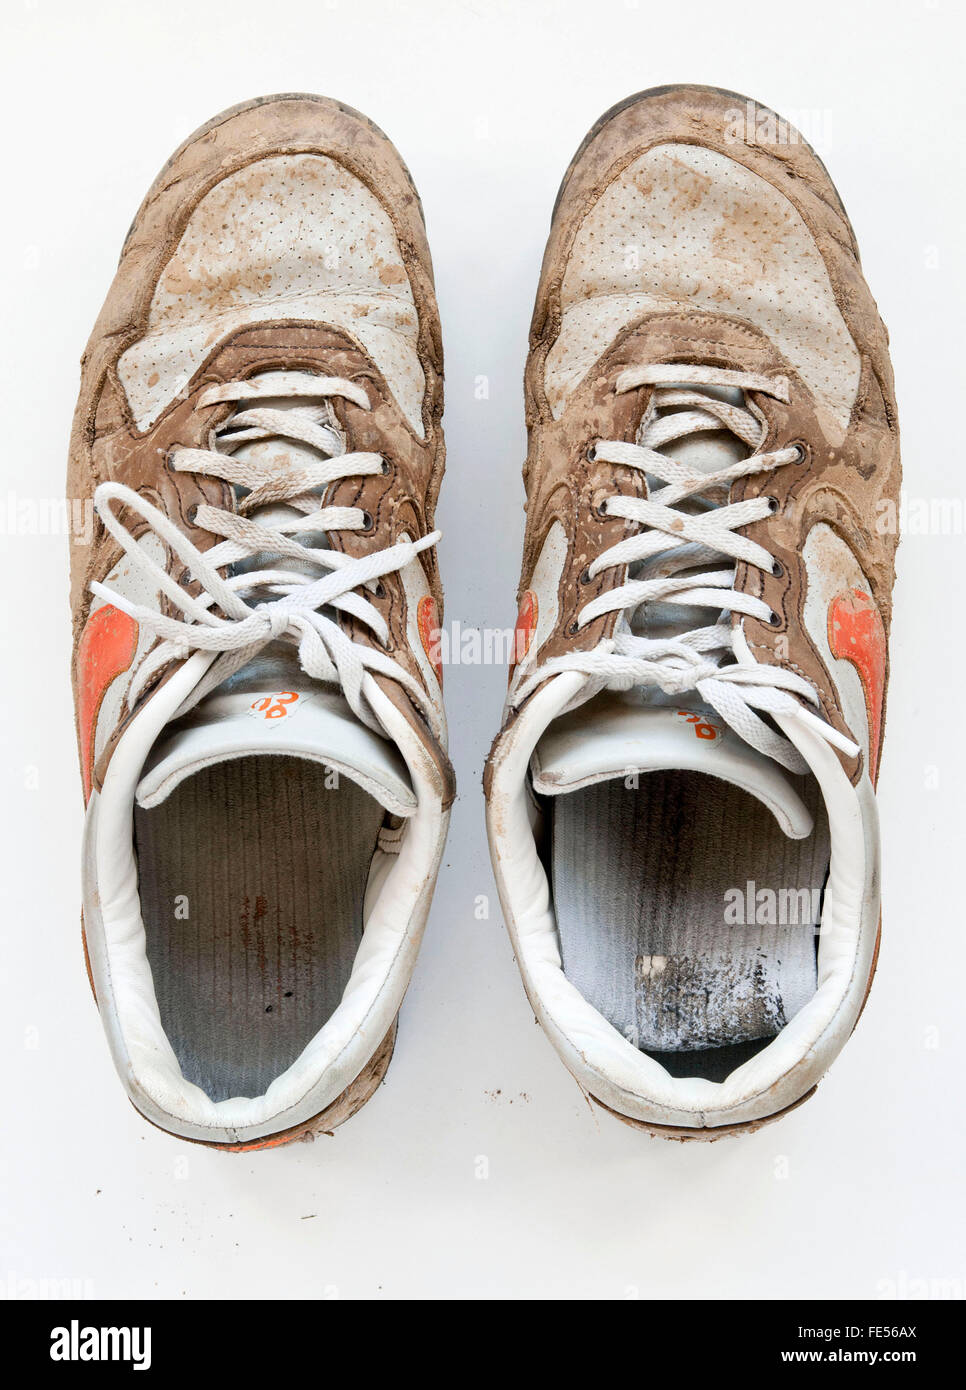 Dirty snikers, chaussures, blanc, orange, de boue, de la boue, les chaussures de sport Banque D'Images